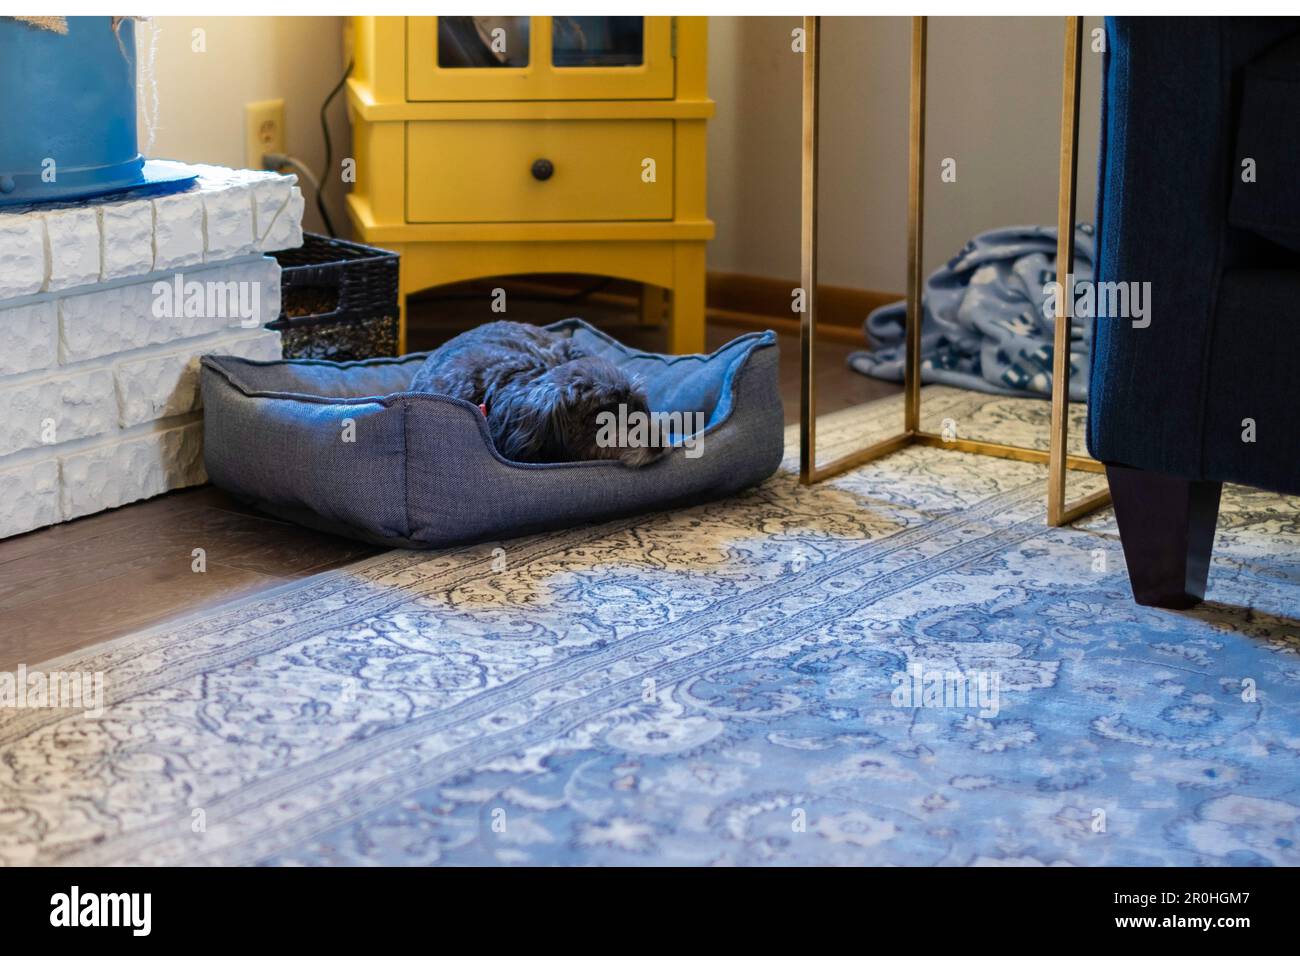 Un cane misto di razza poodle si trova nel suo letto di animale domestico e riposa nel soggiorno di una casa, Stati Uniti. Foto Stock